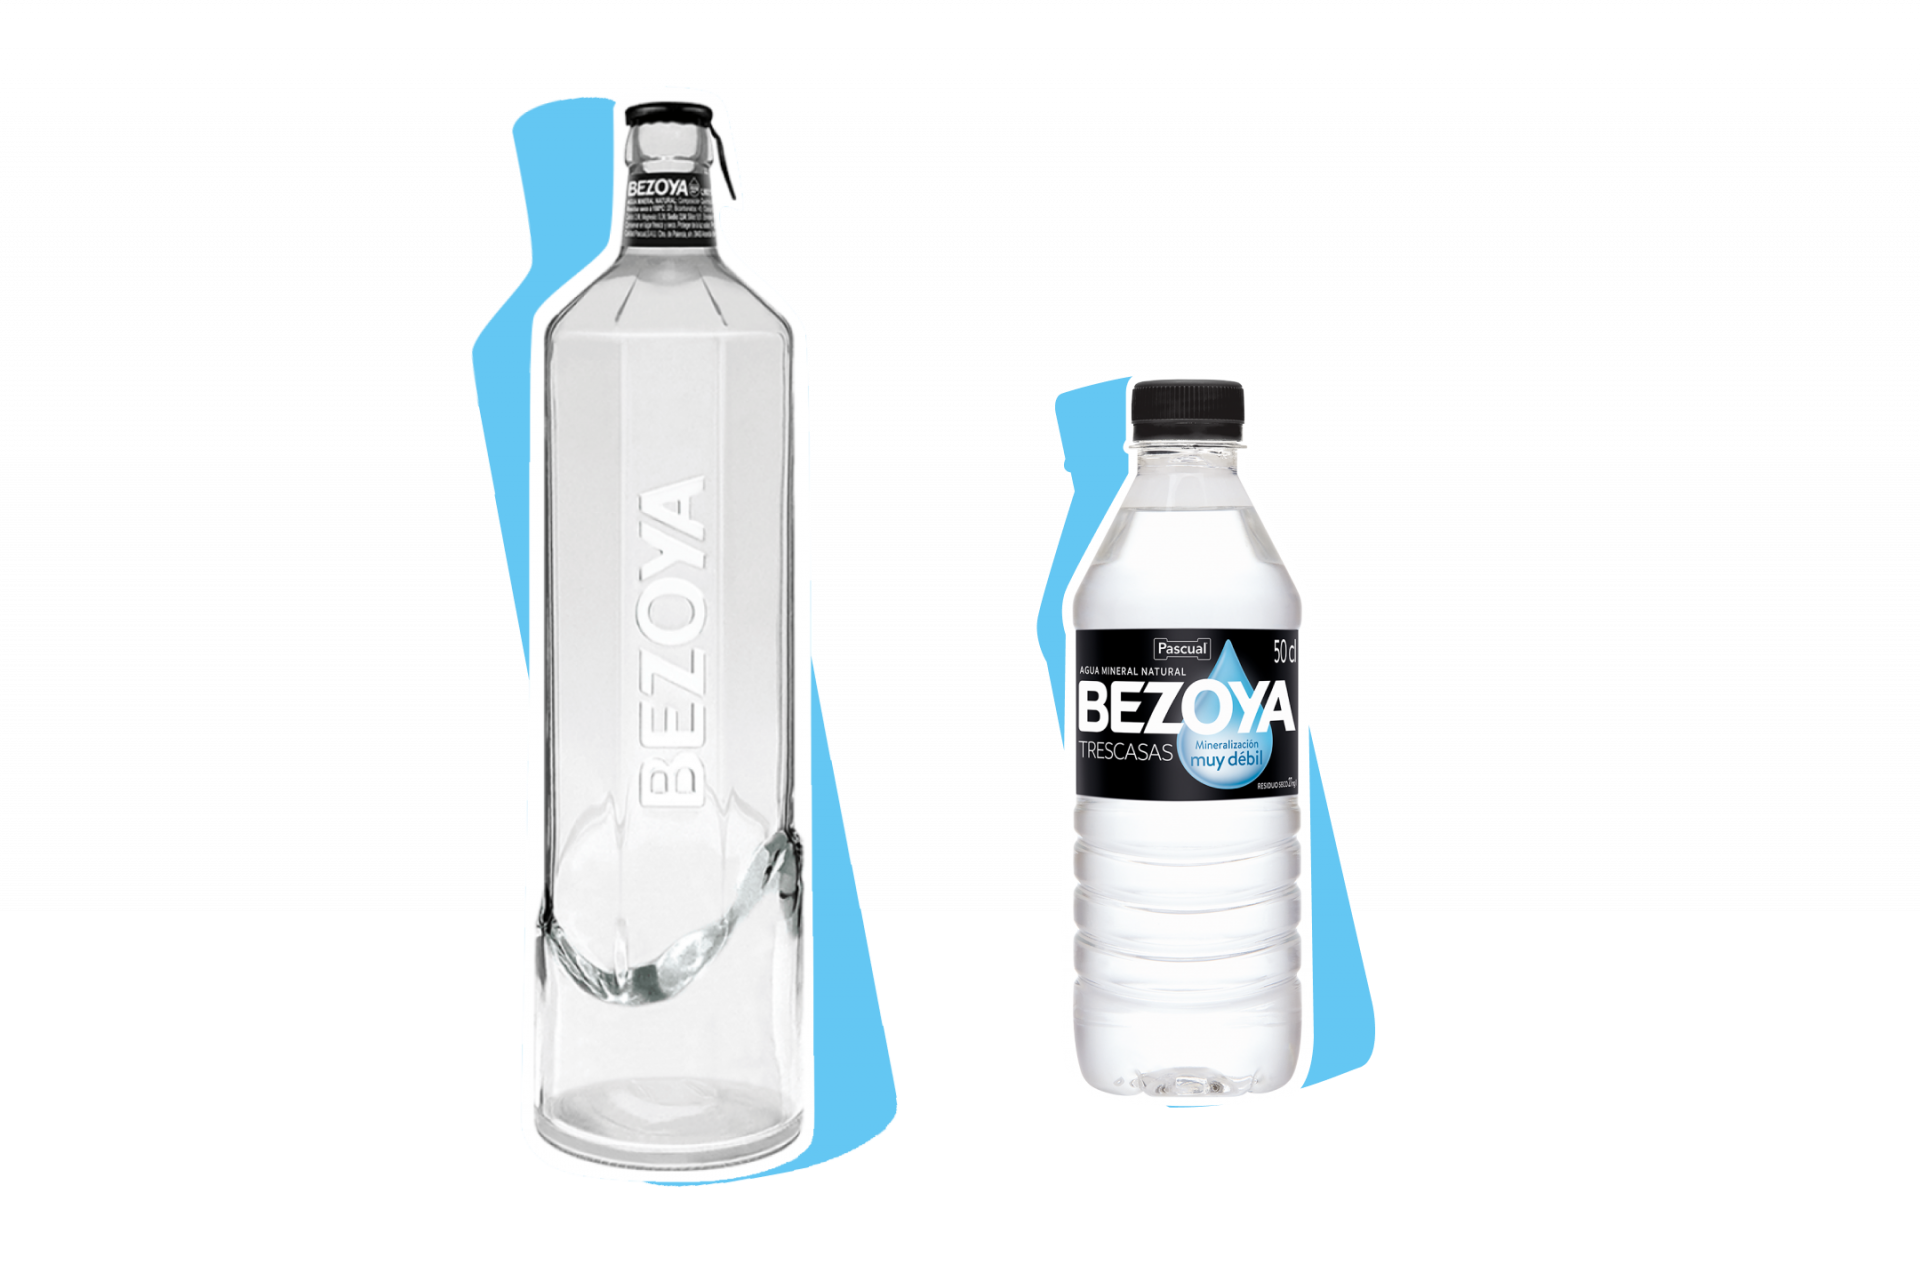 FORMATO 8 LITROS BEZOYA, Nuevo formato de 8 litros en La Tienda del Agua.  Este nuevo formato utiliza el 60% menos de plástico en comparación con  otros formatos de gran tamaño .